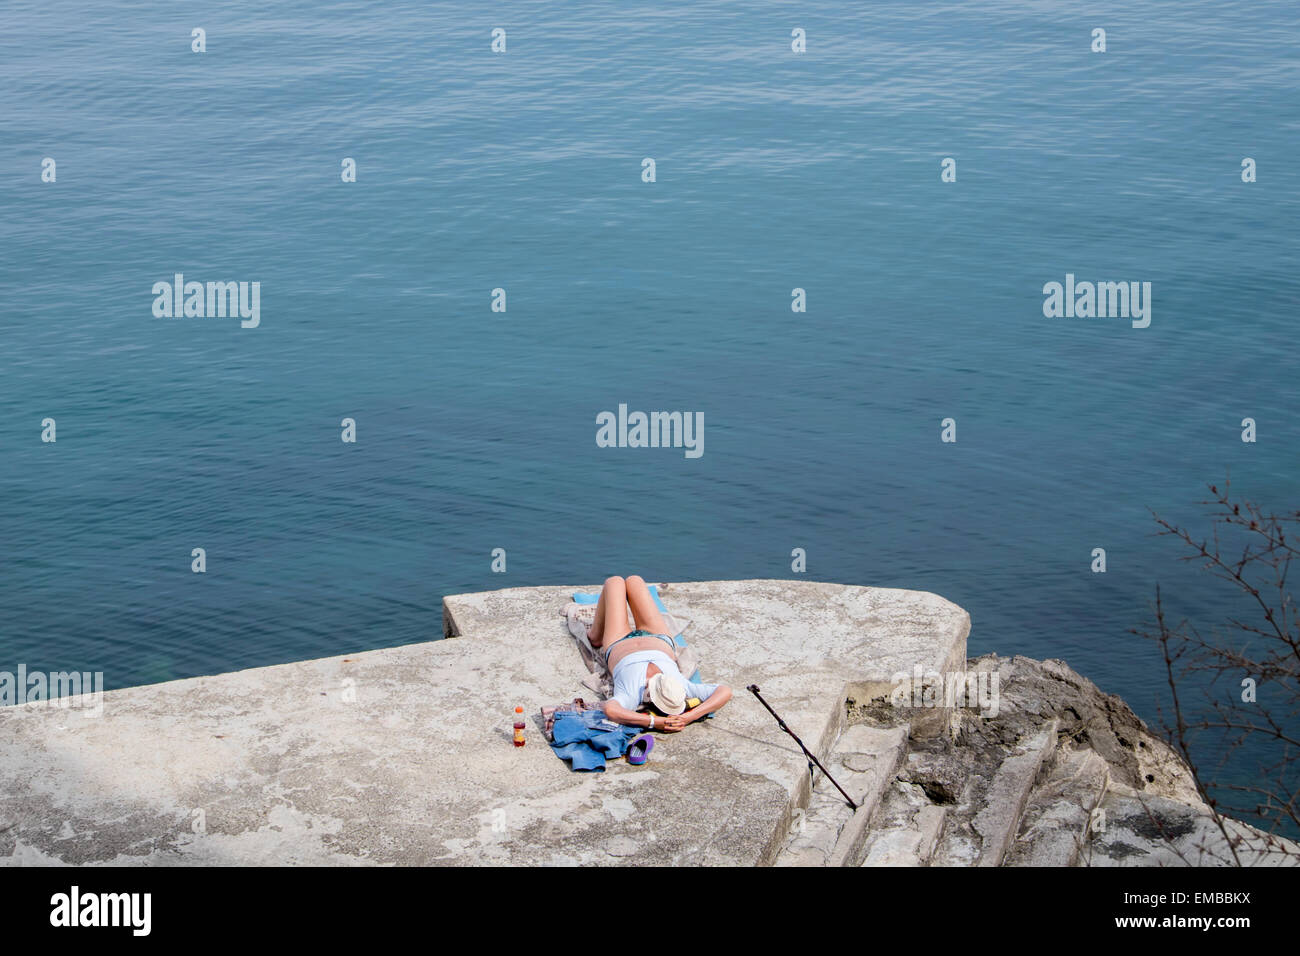 A woman sunbathing on a rocky beach in Opatija, Croatia Stock Photo